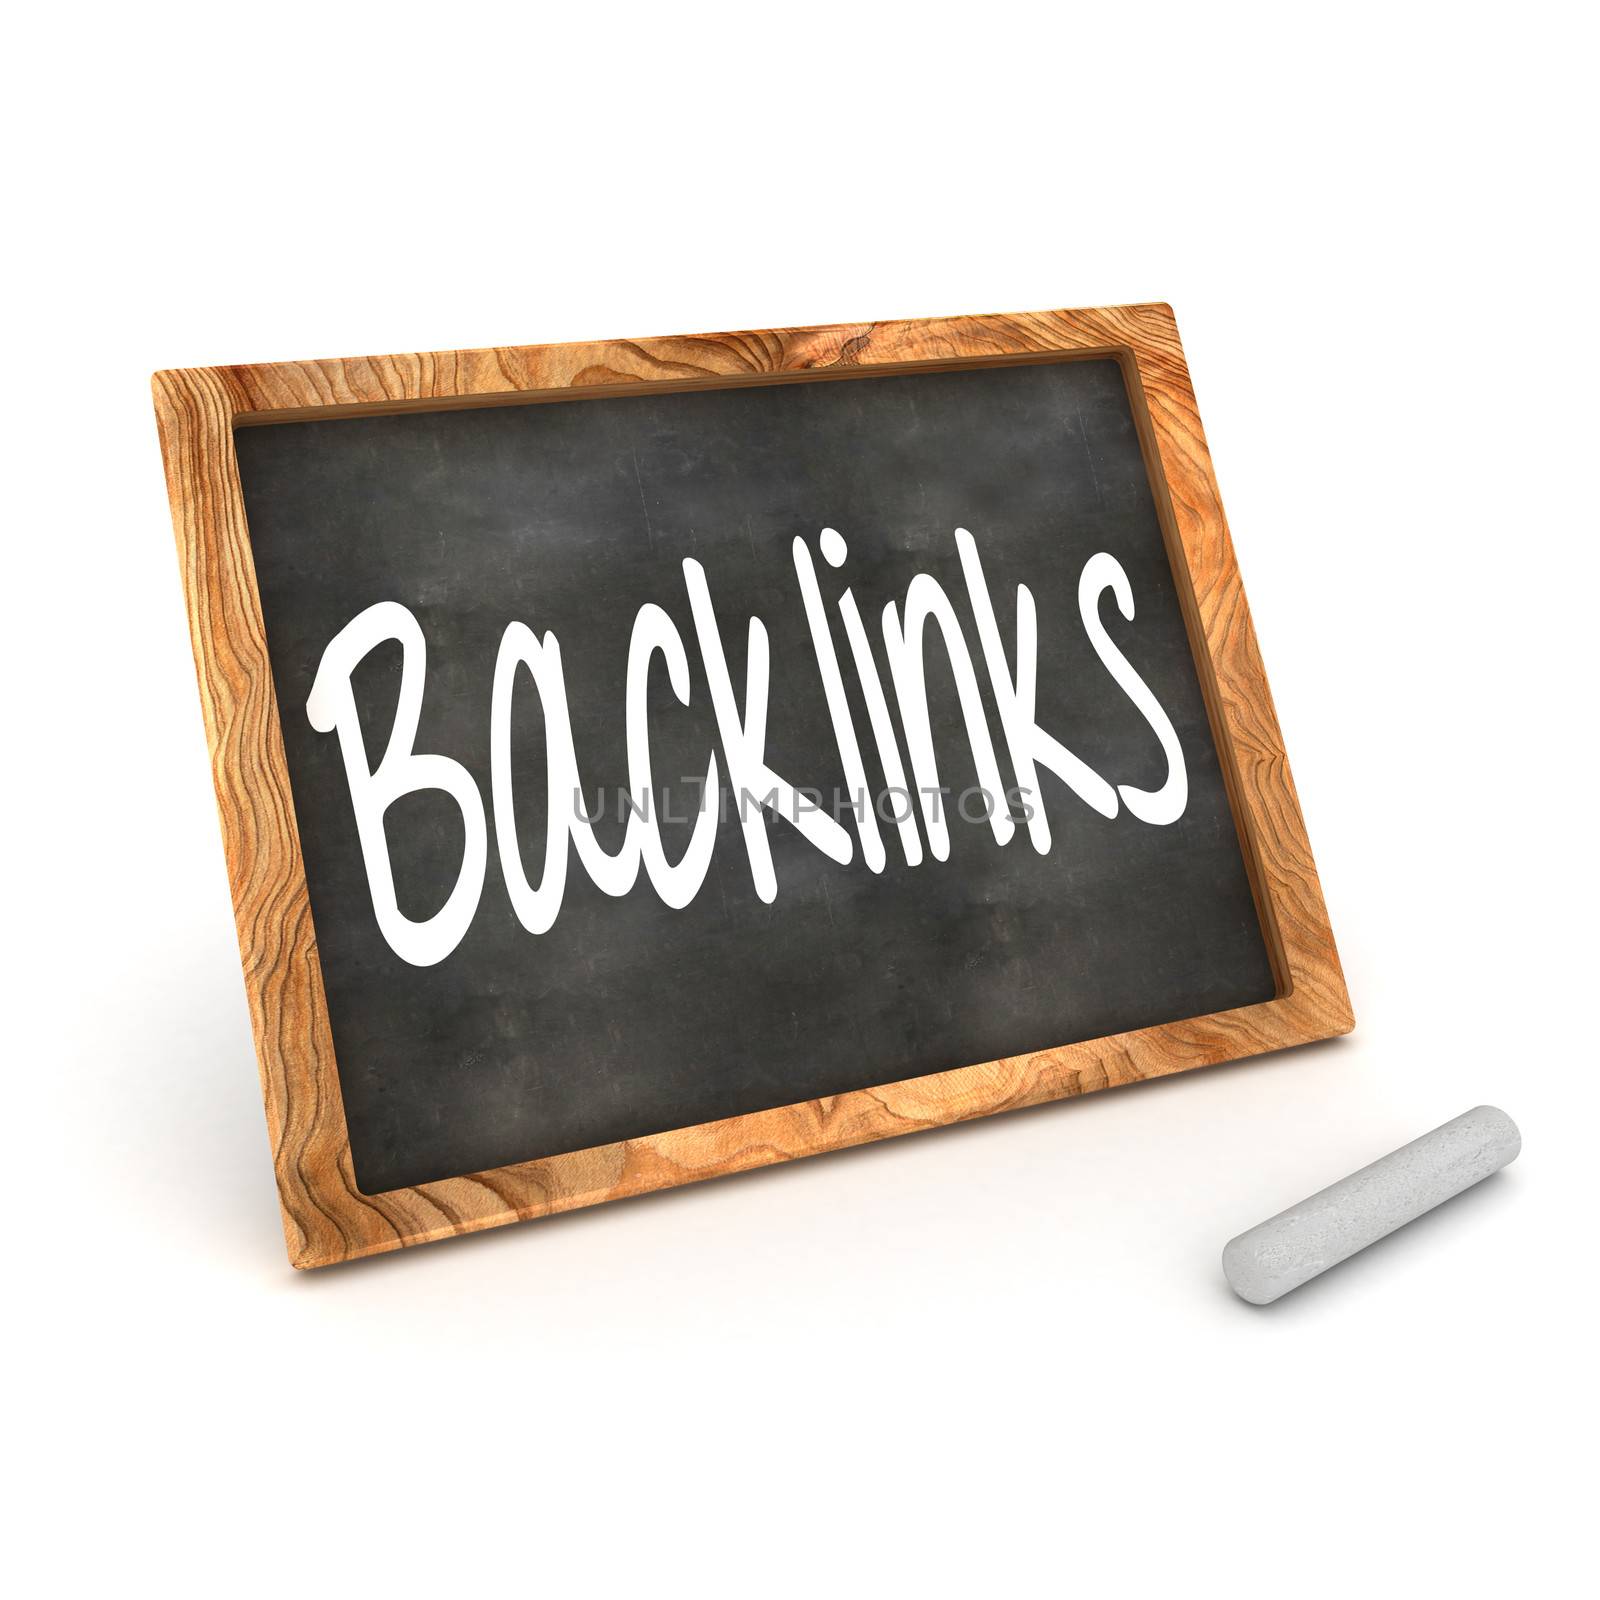 Blackboard Backlinks by head-off